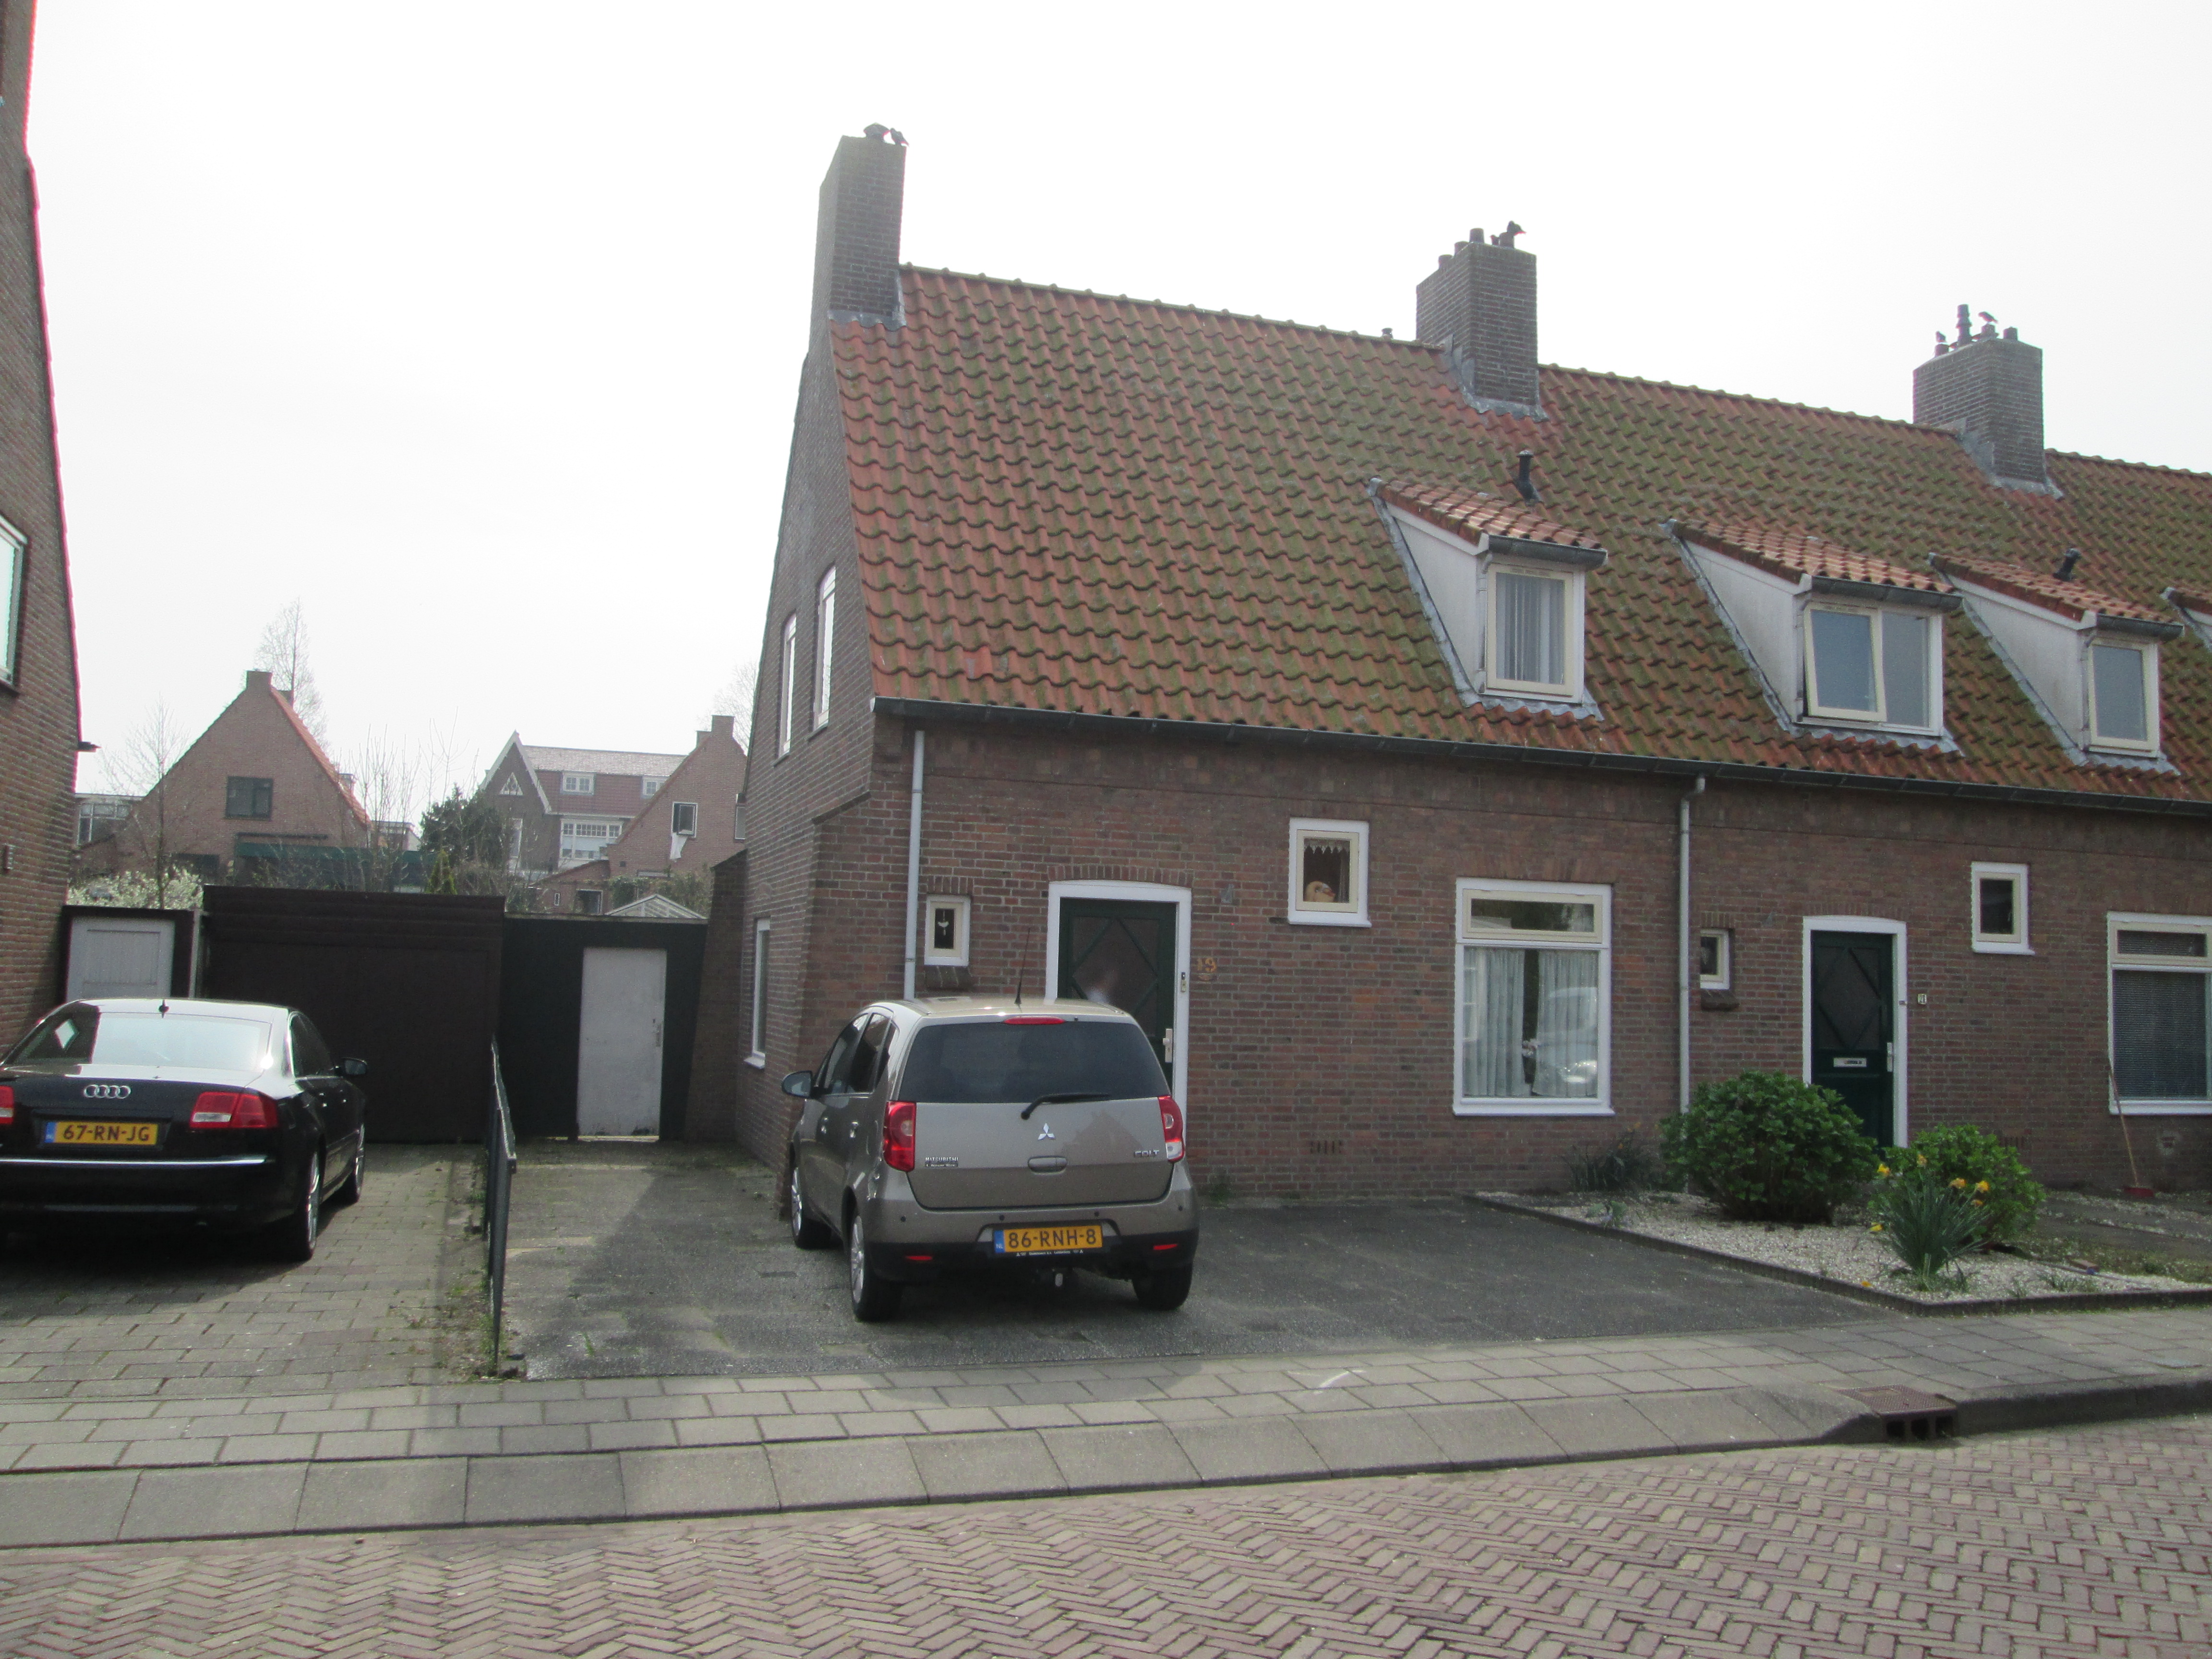 Spoorstraat 19, 2371 XB Roelofarendsveen, Nederland